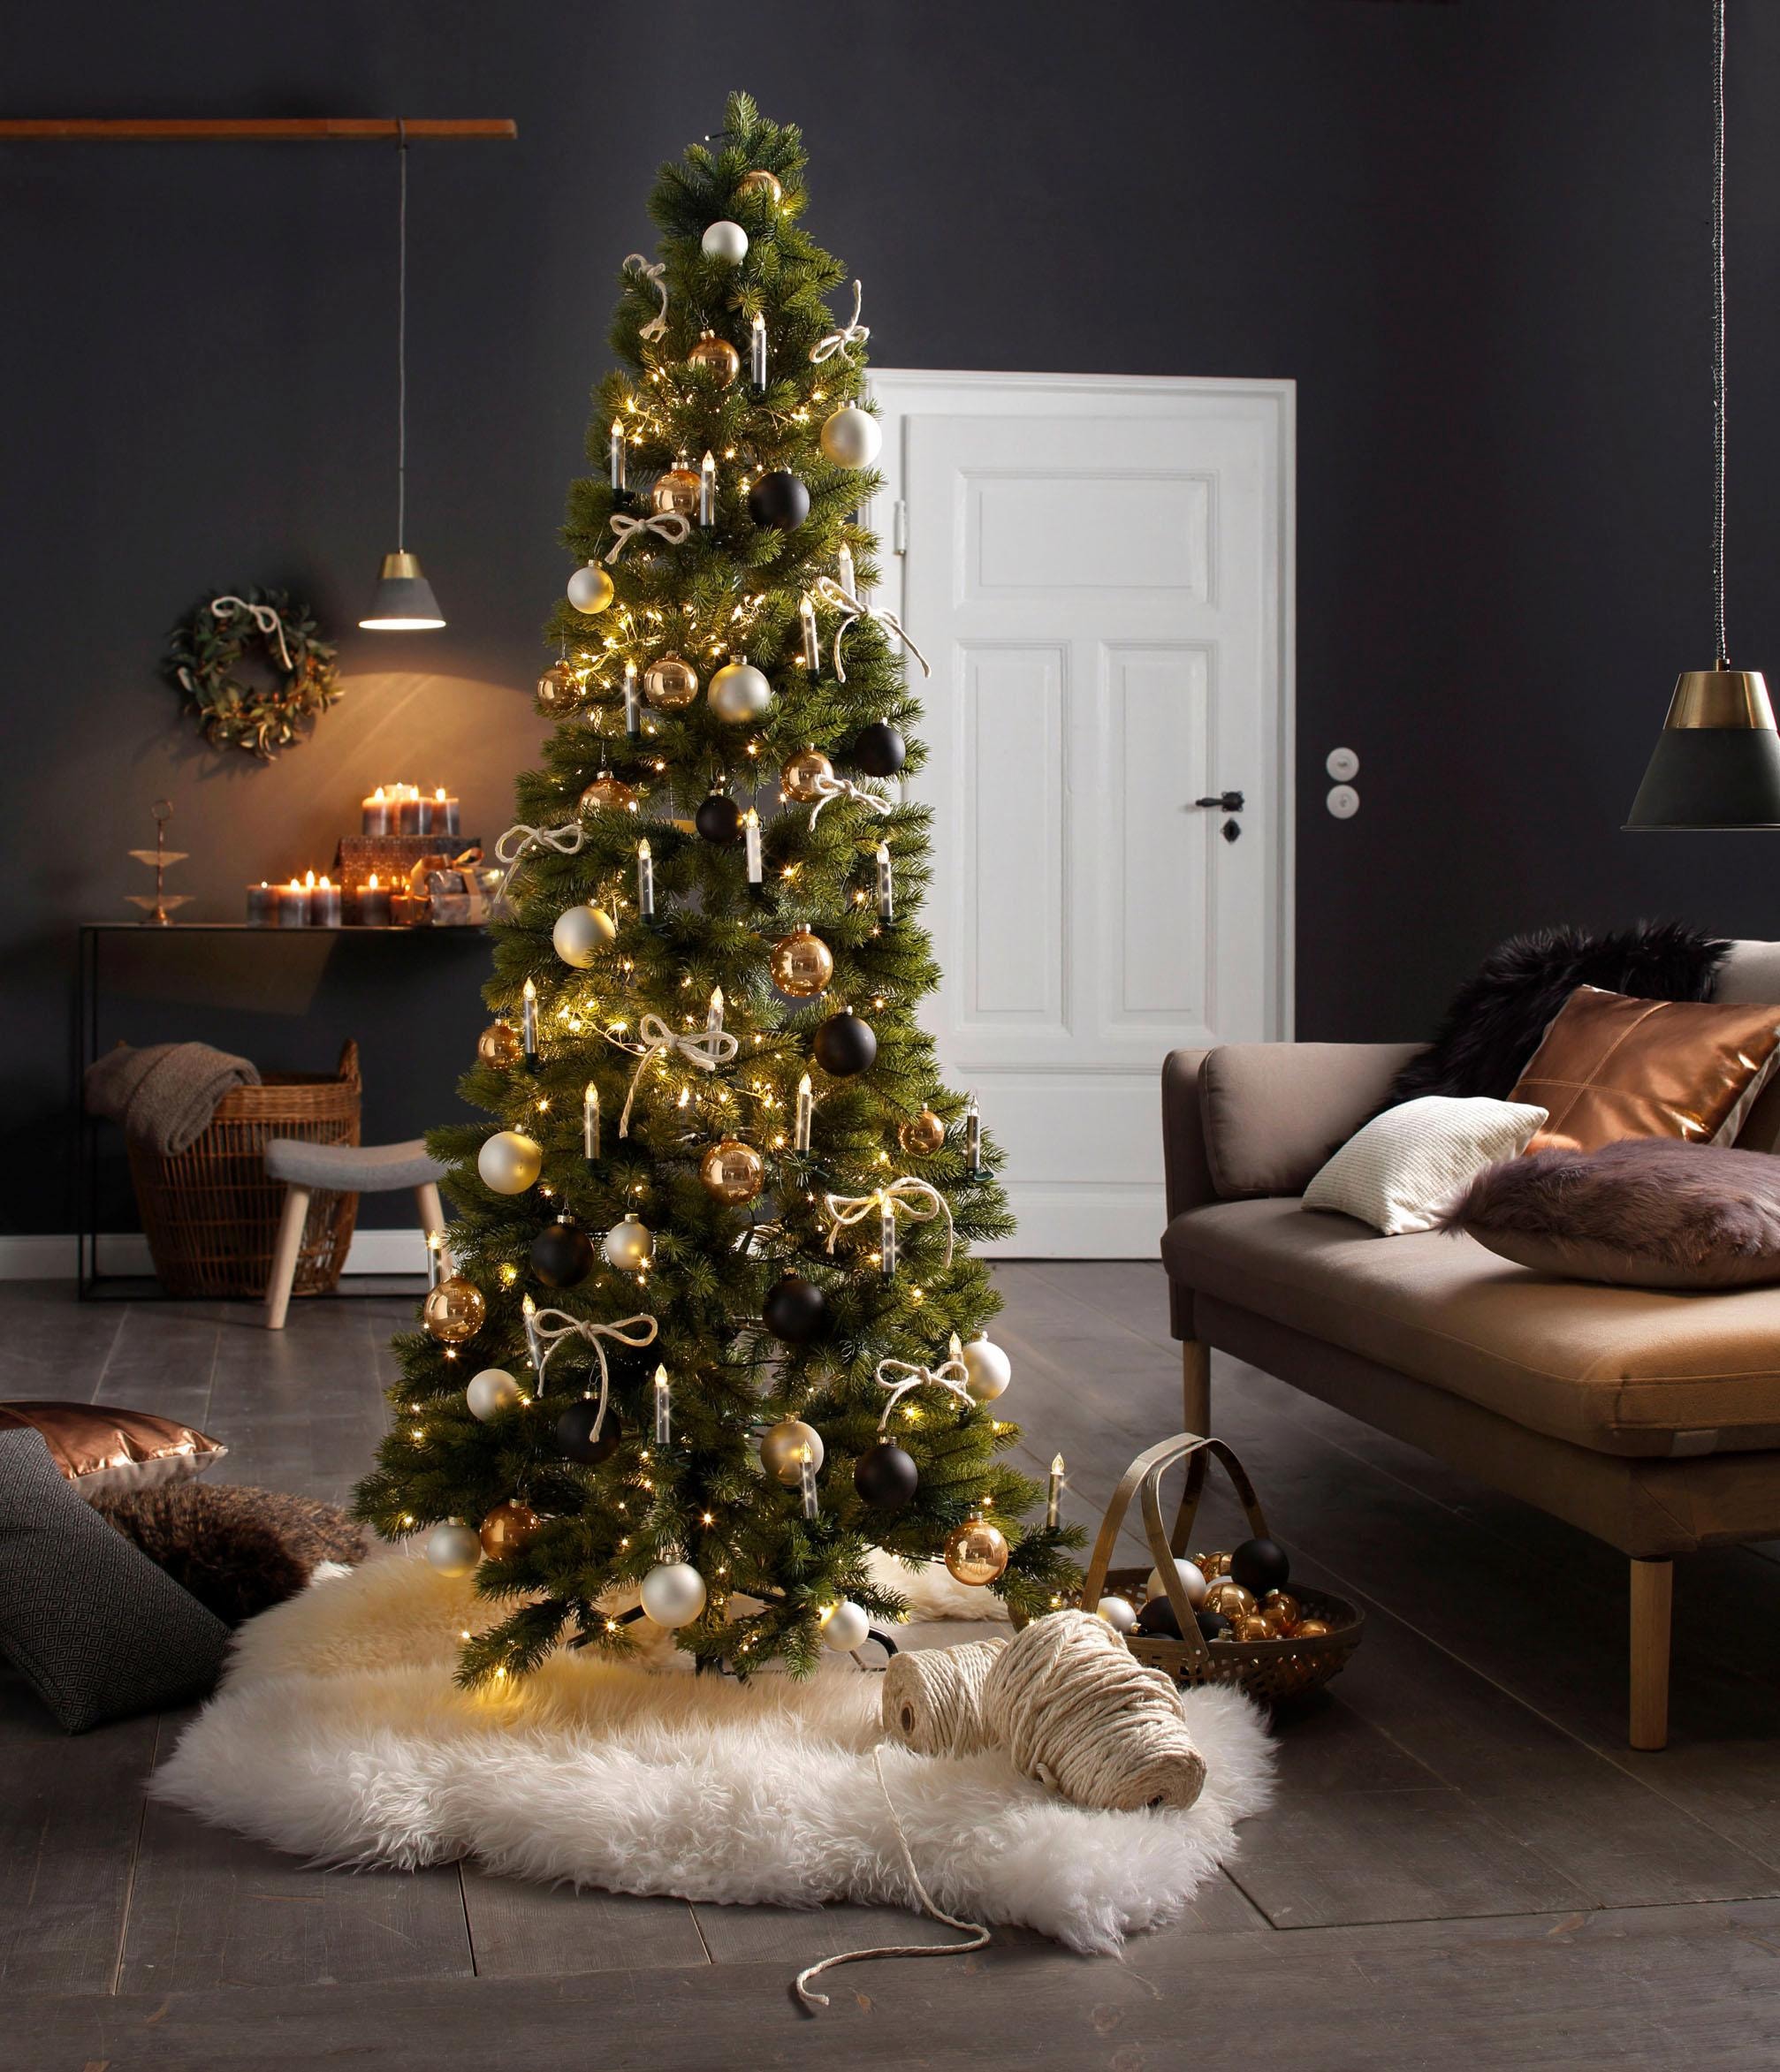 Creativ deco Künstlicher Weihnachtsbaum »Weihnachtsdeko, künstlicher Christbaum, Tannenbaum«, in schlanker Form, mit LED-Lichterkette